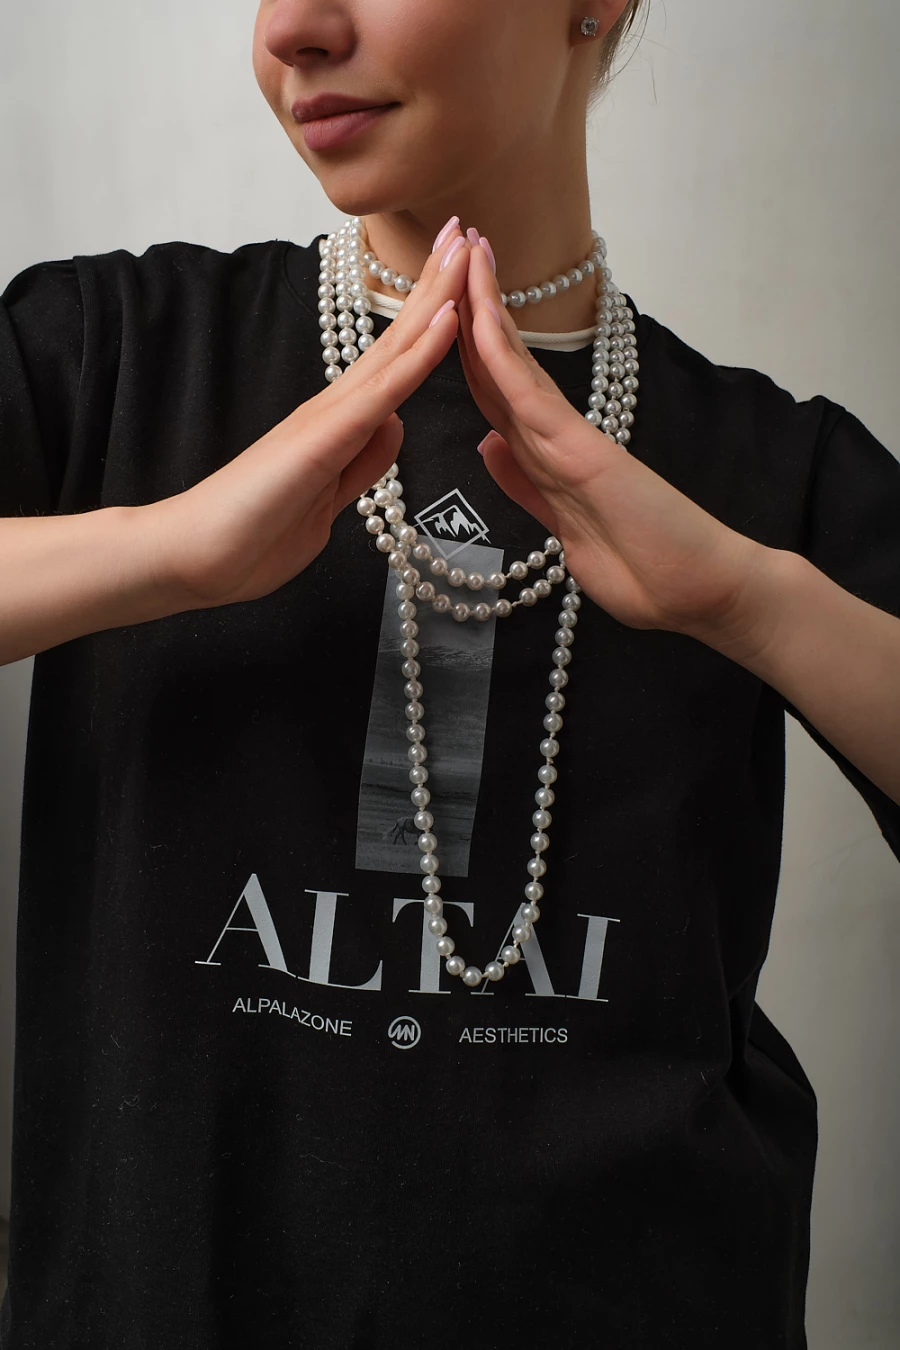 Коллекция ALTAI бренда alpalazone.